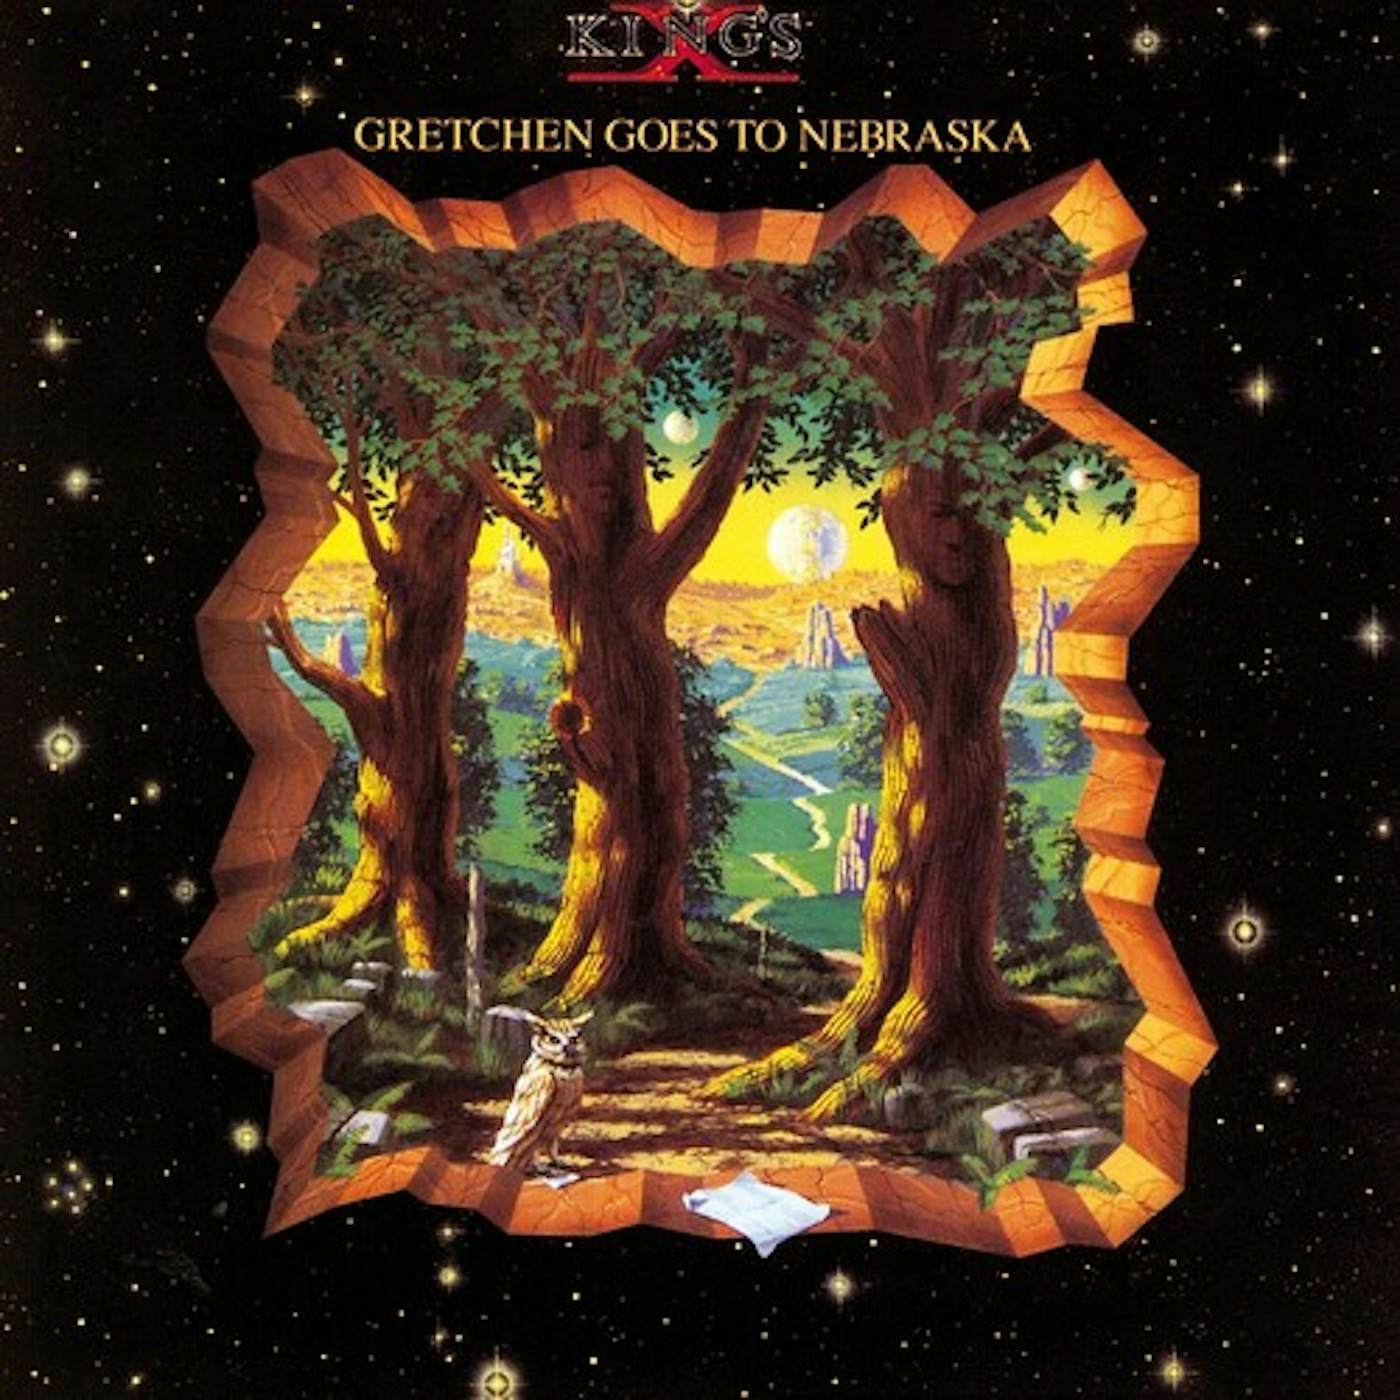 King's X GRETCHEN GOES TO NEBRASKA CD